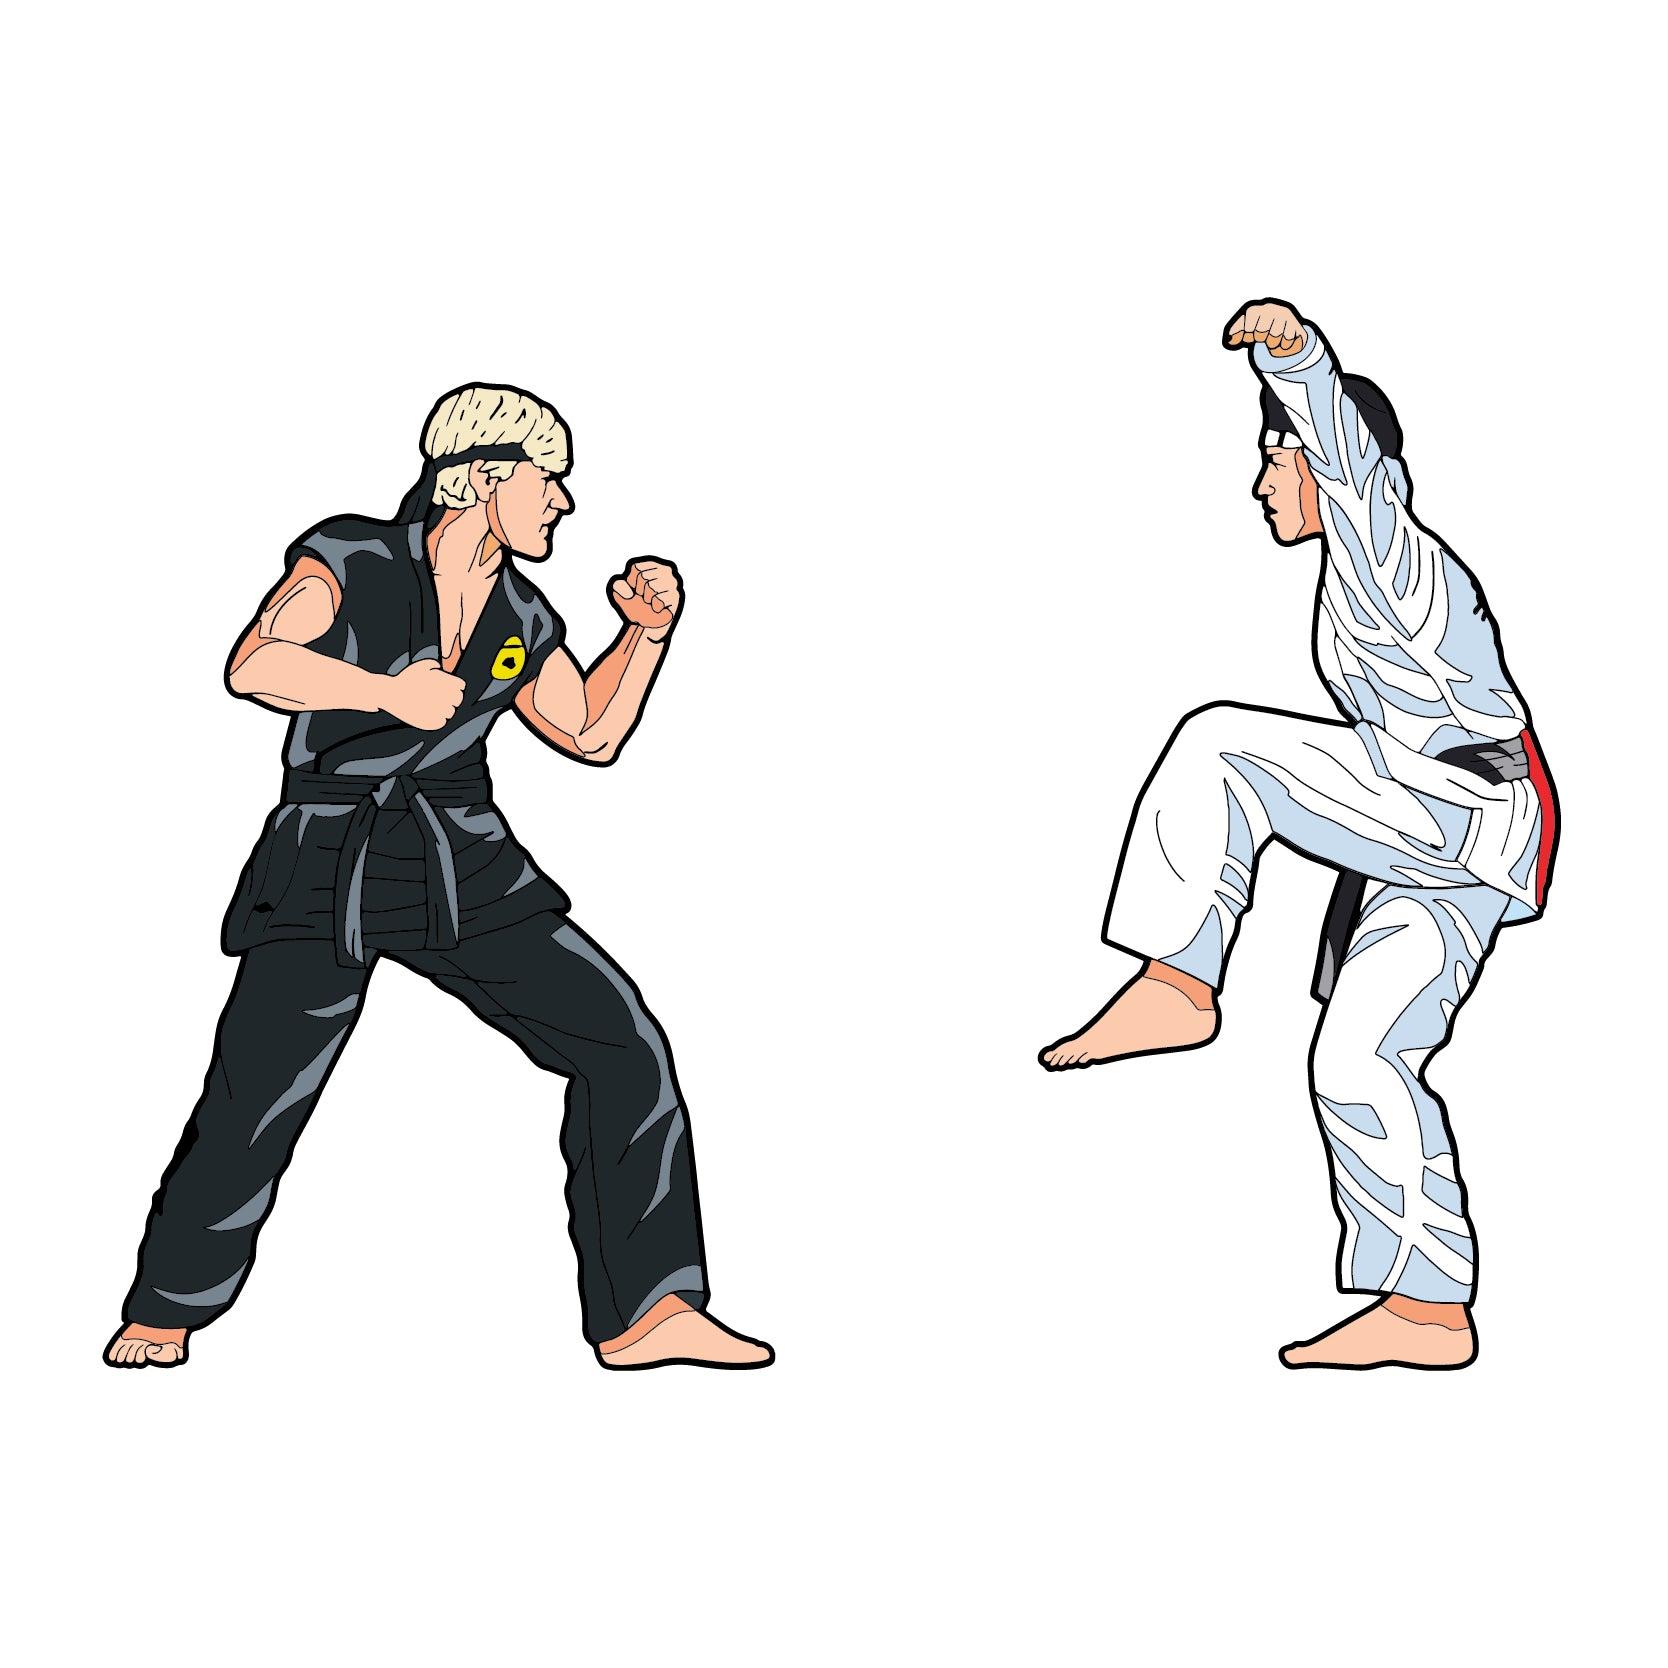 The Karate Kid Enamel Pins PinBook Vol. 2 - Icon Heroes 